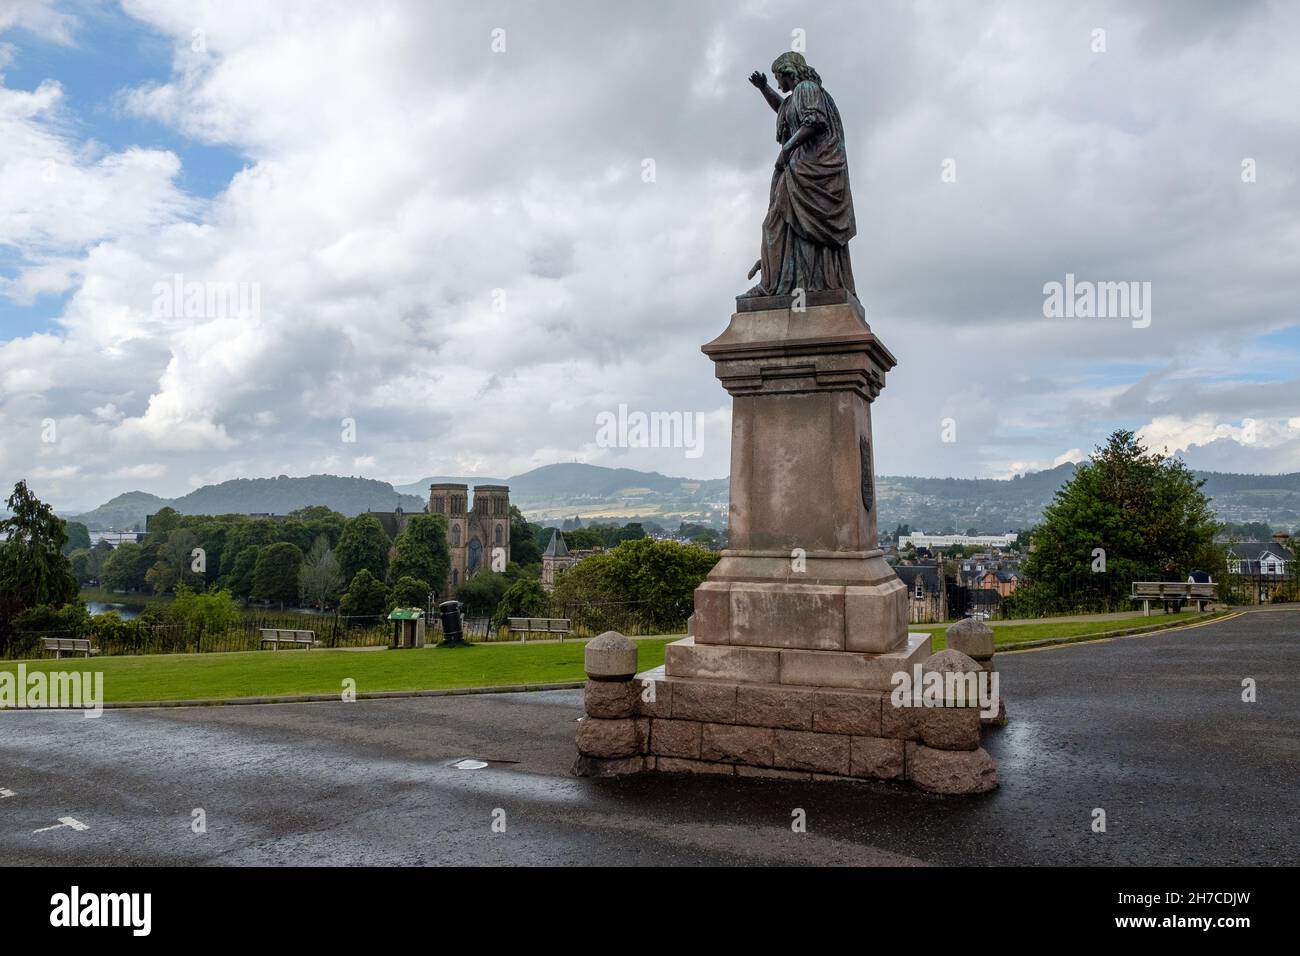 Statue de Flora Macdonald à l'extérieur du château d'Inverness, cathédrale d'Inverness en arrière-plan, entre les averses de pluie Banque D'Images